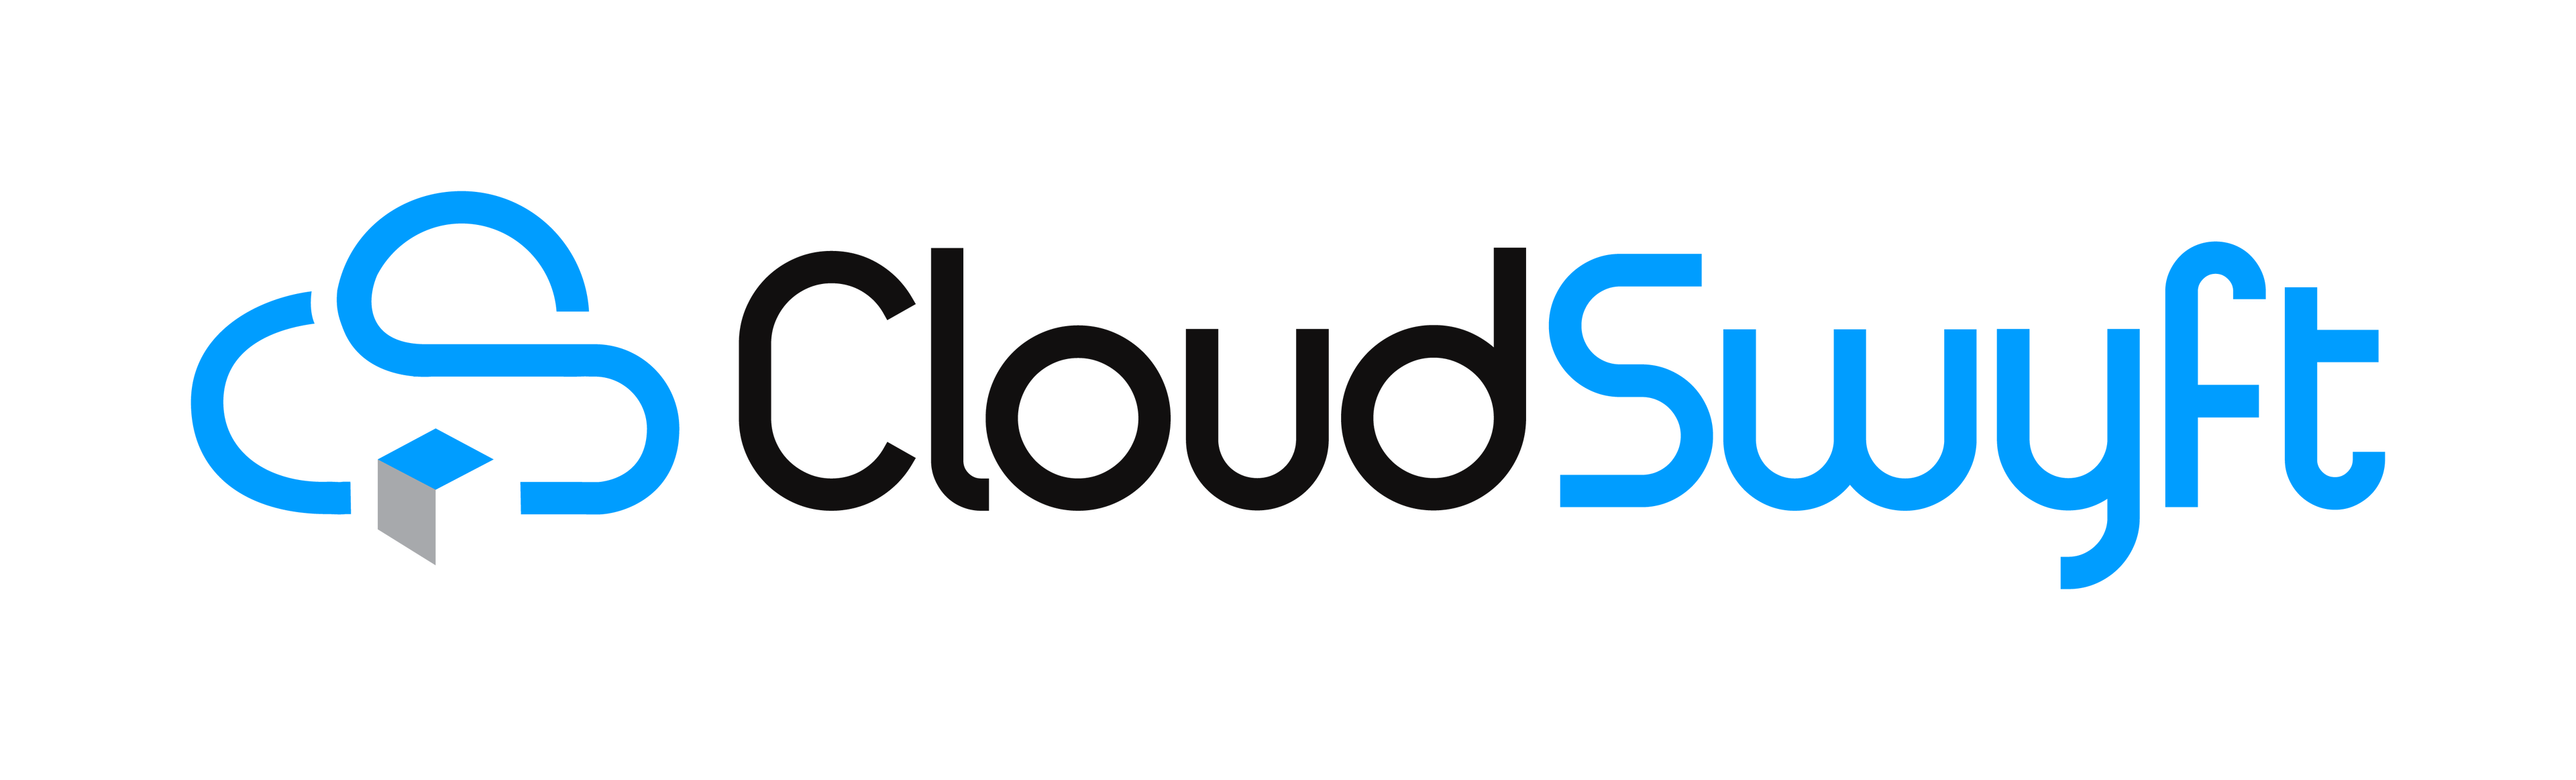 CloudSwyft logo